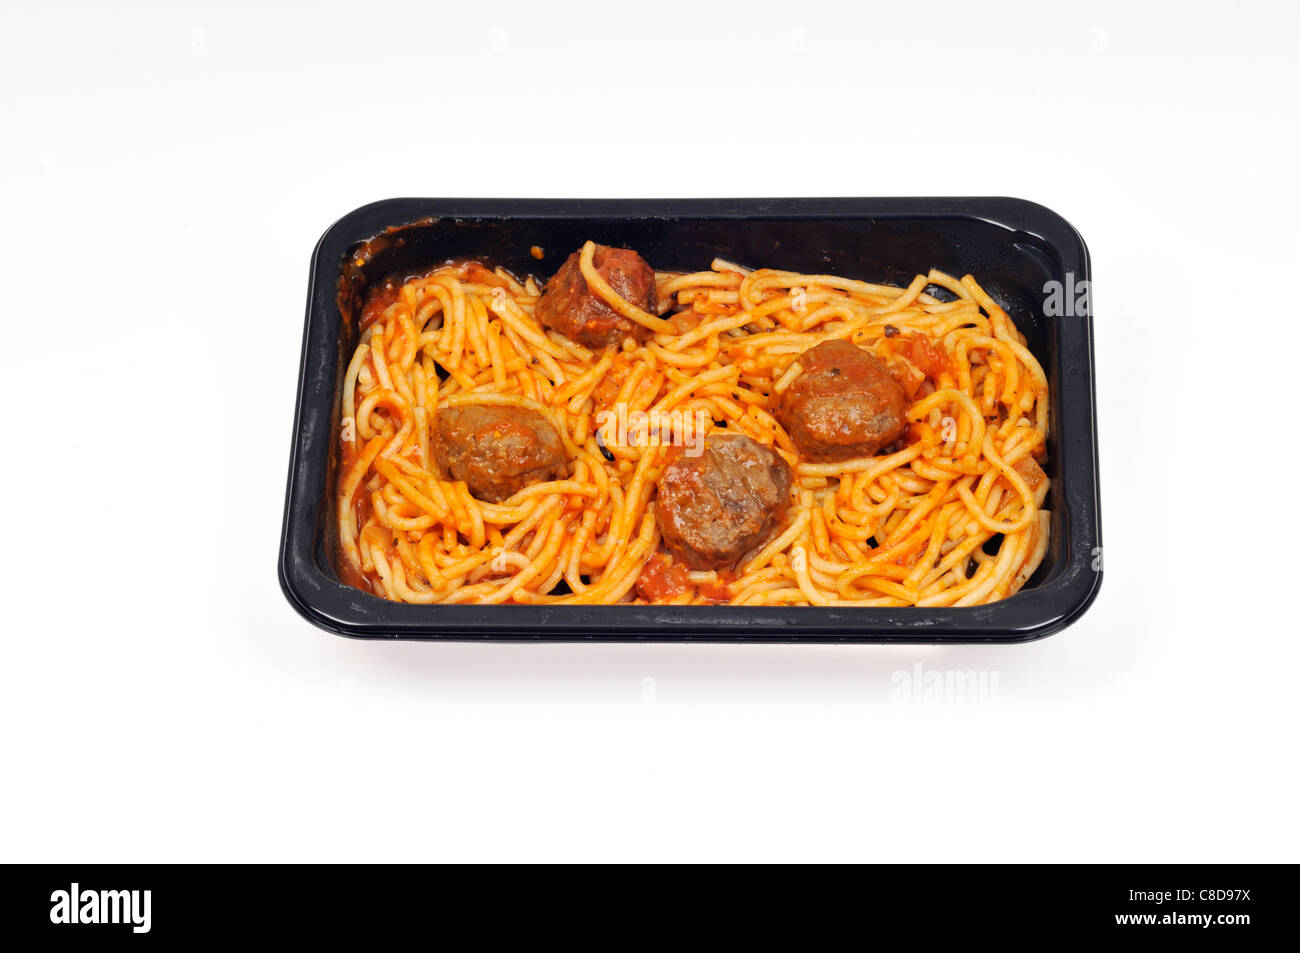 Tablett mit Mikrowelle gekochten Spaghetti und Fleischbällchen Fertiggericht auf weißem Hintergrund, Ausschnitt. Stockfoto